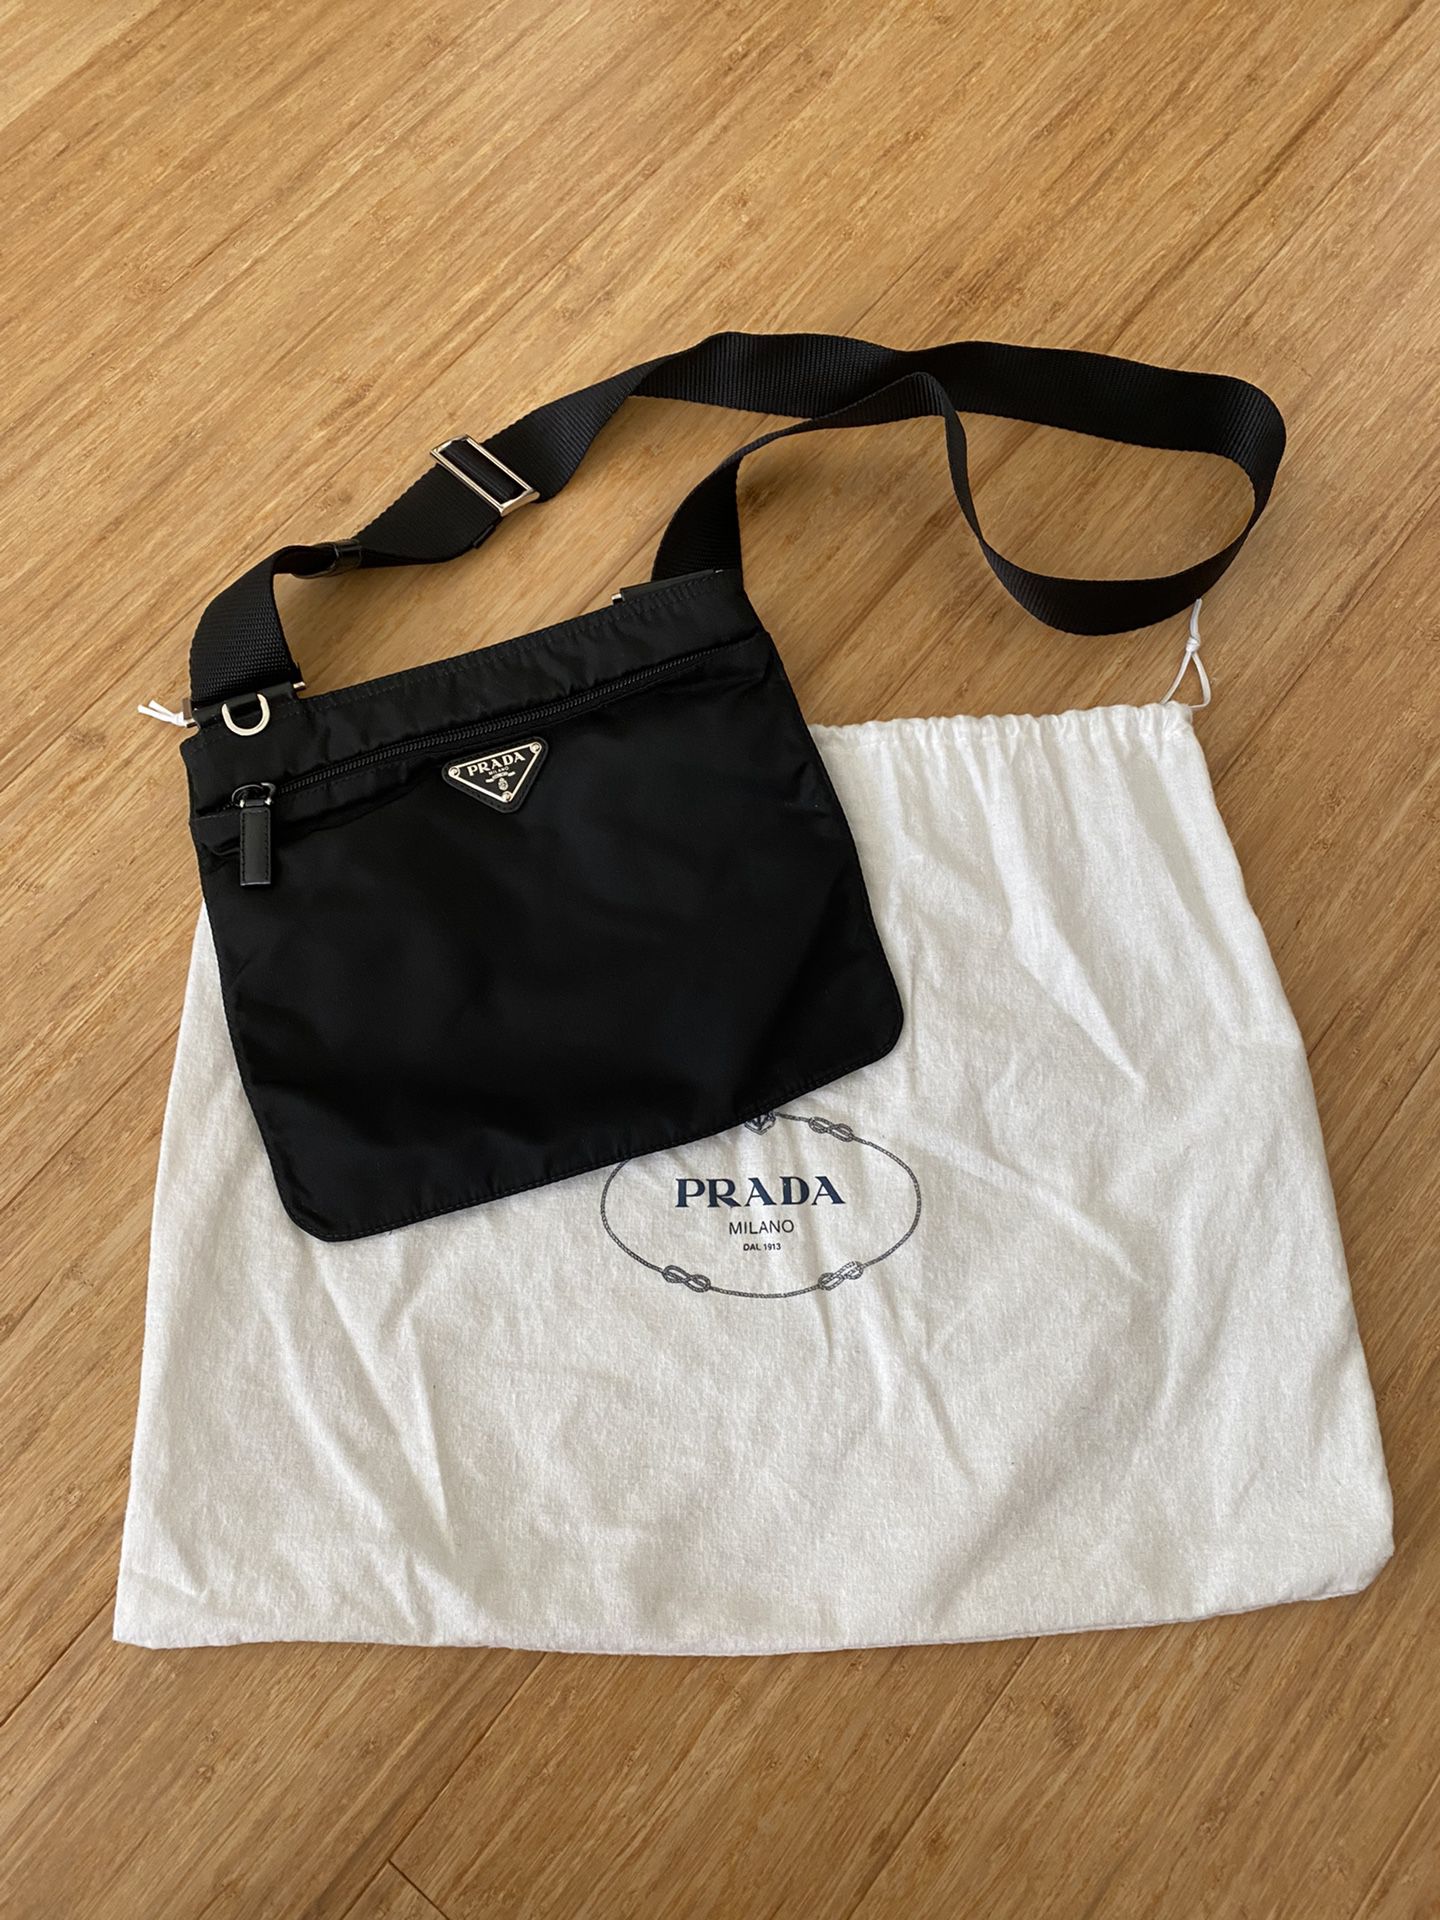 Prada Nylon Vela Messenger Bag